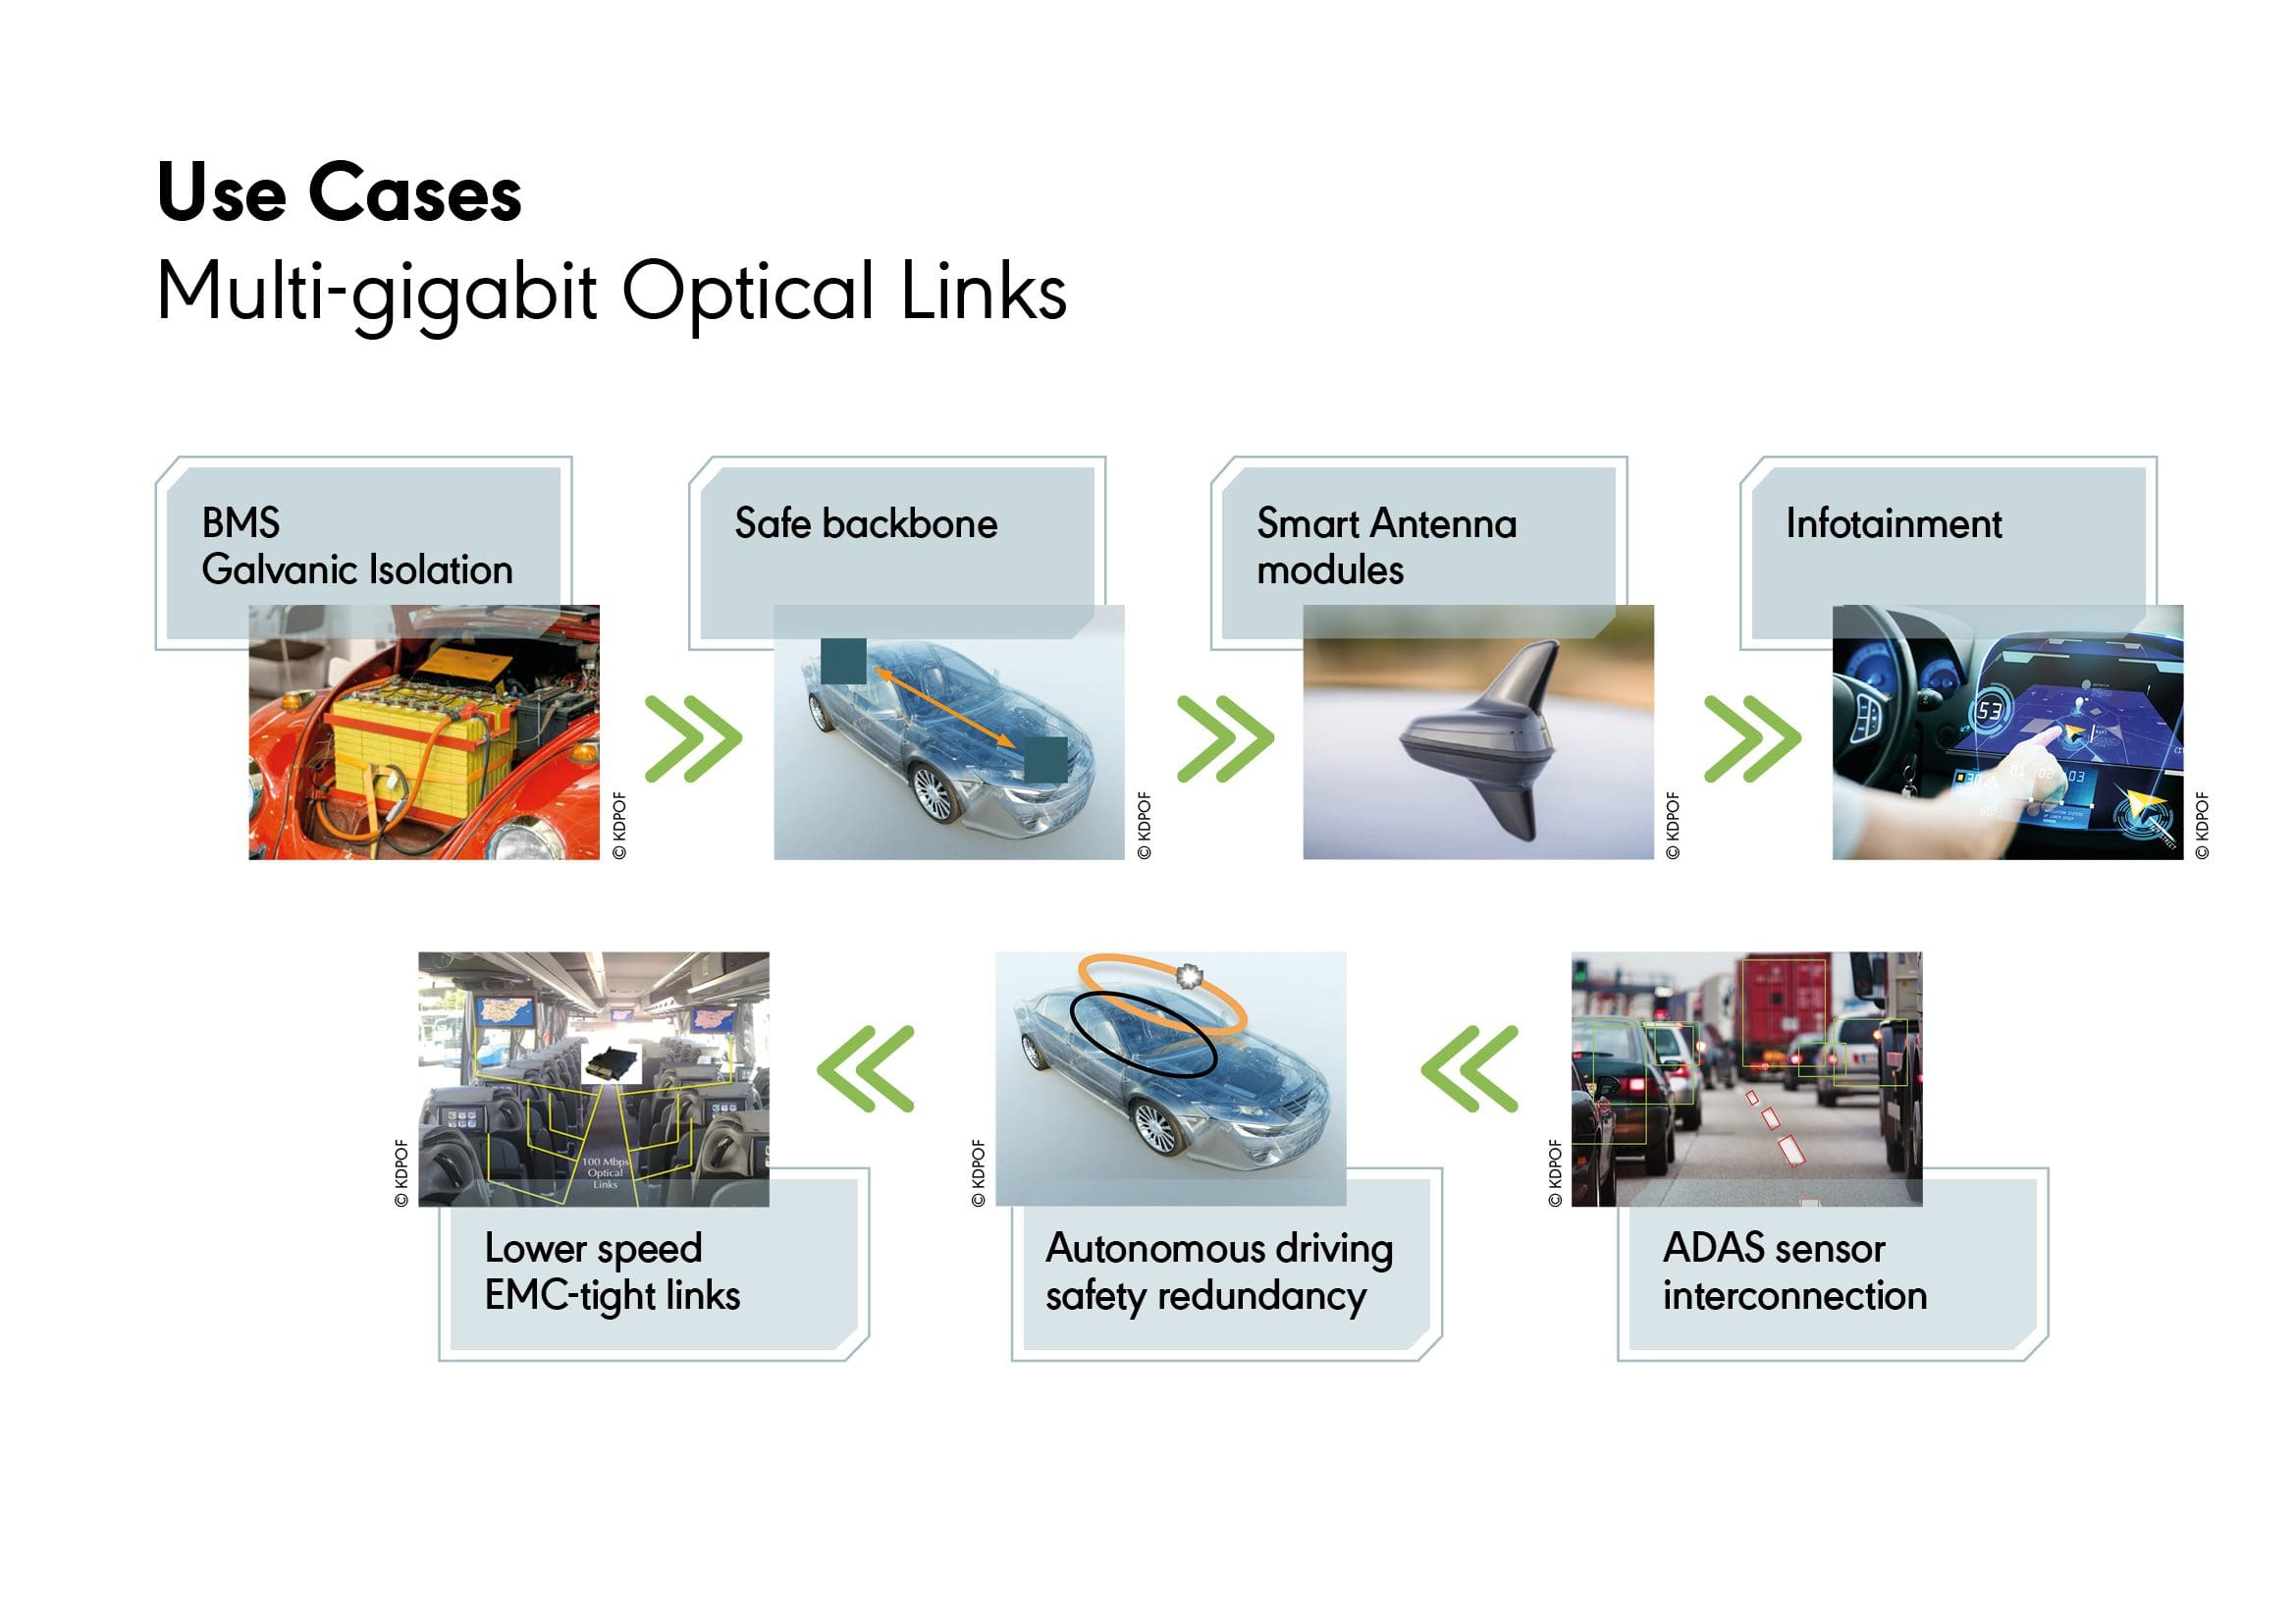 Use Cases for Multi-Gigabit Optical Links